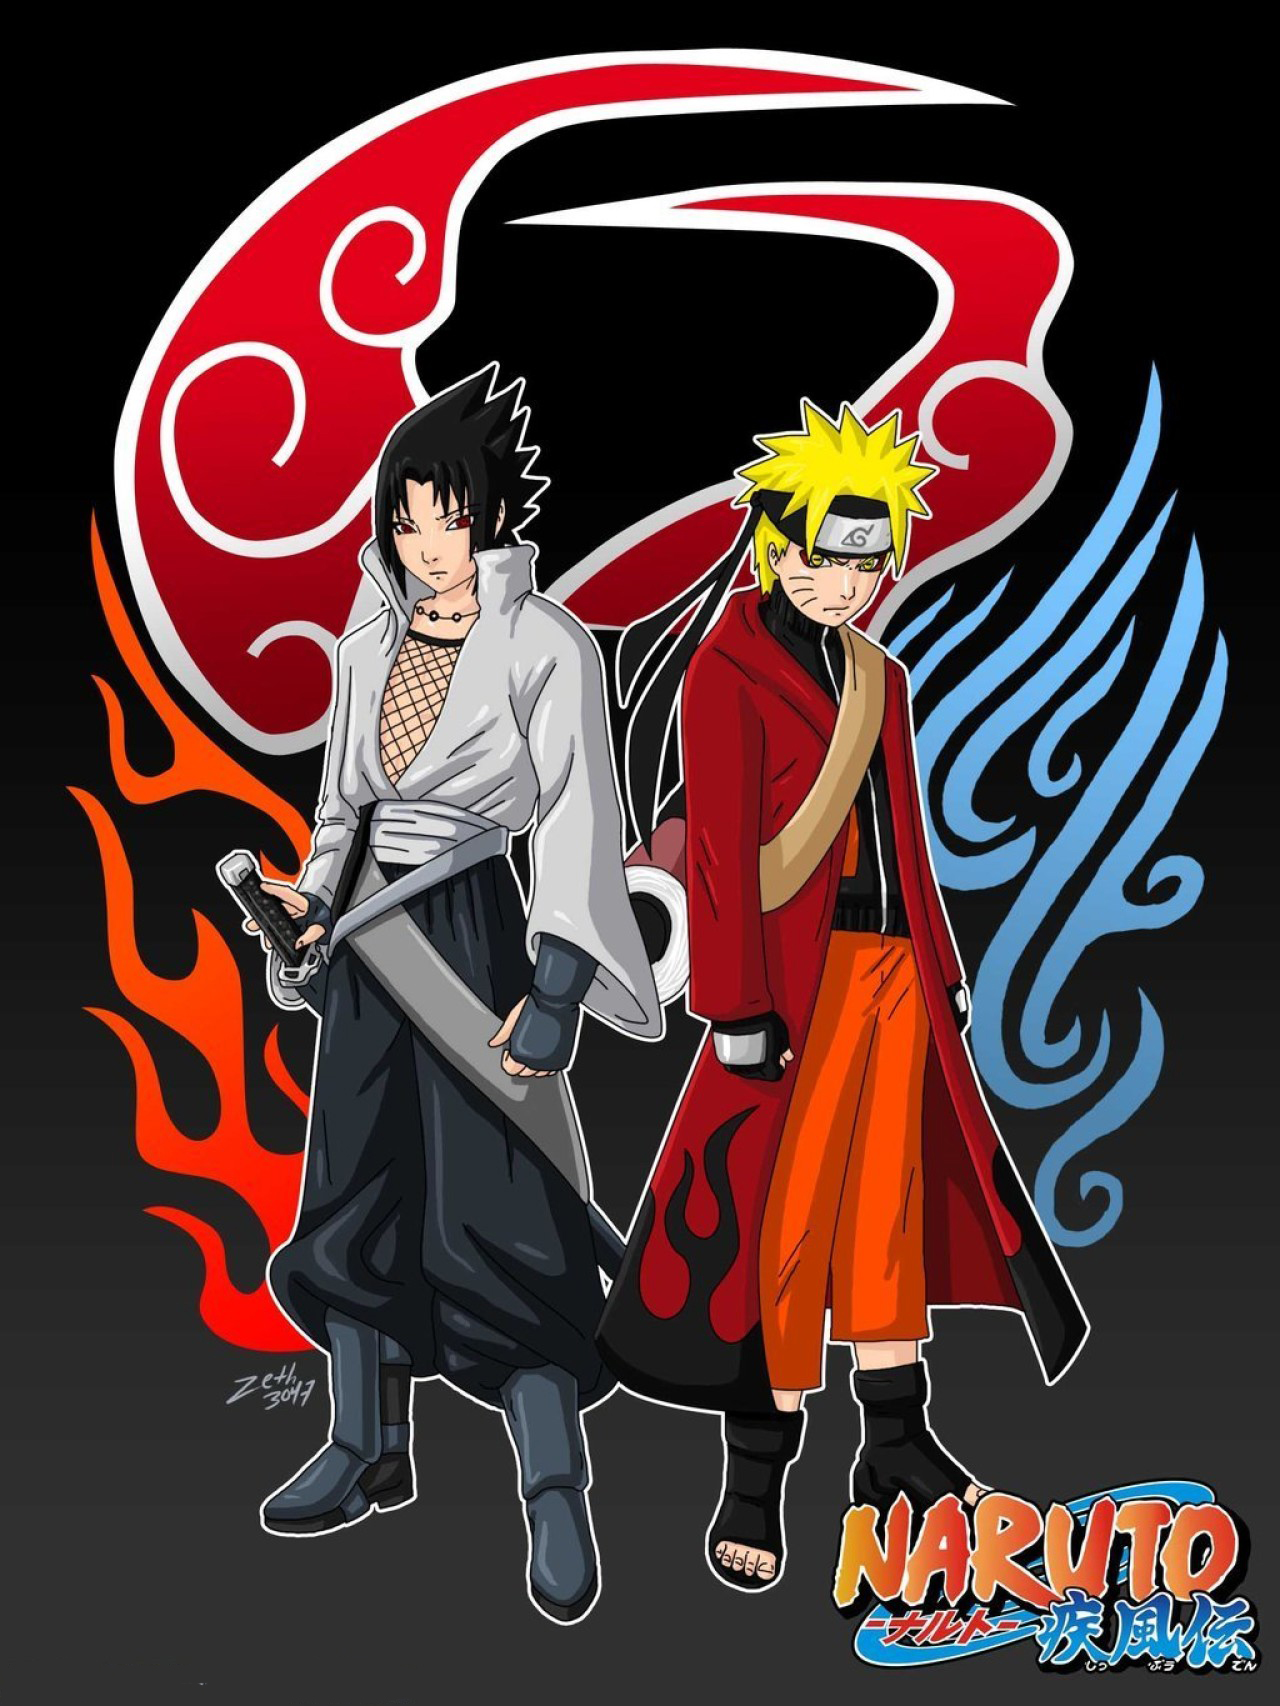 Hình ảnh Sasuke và Naruto đẹp, ngầu